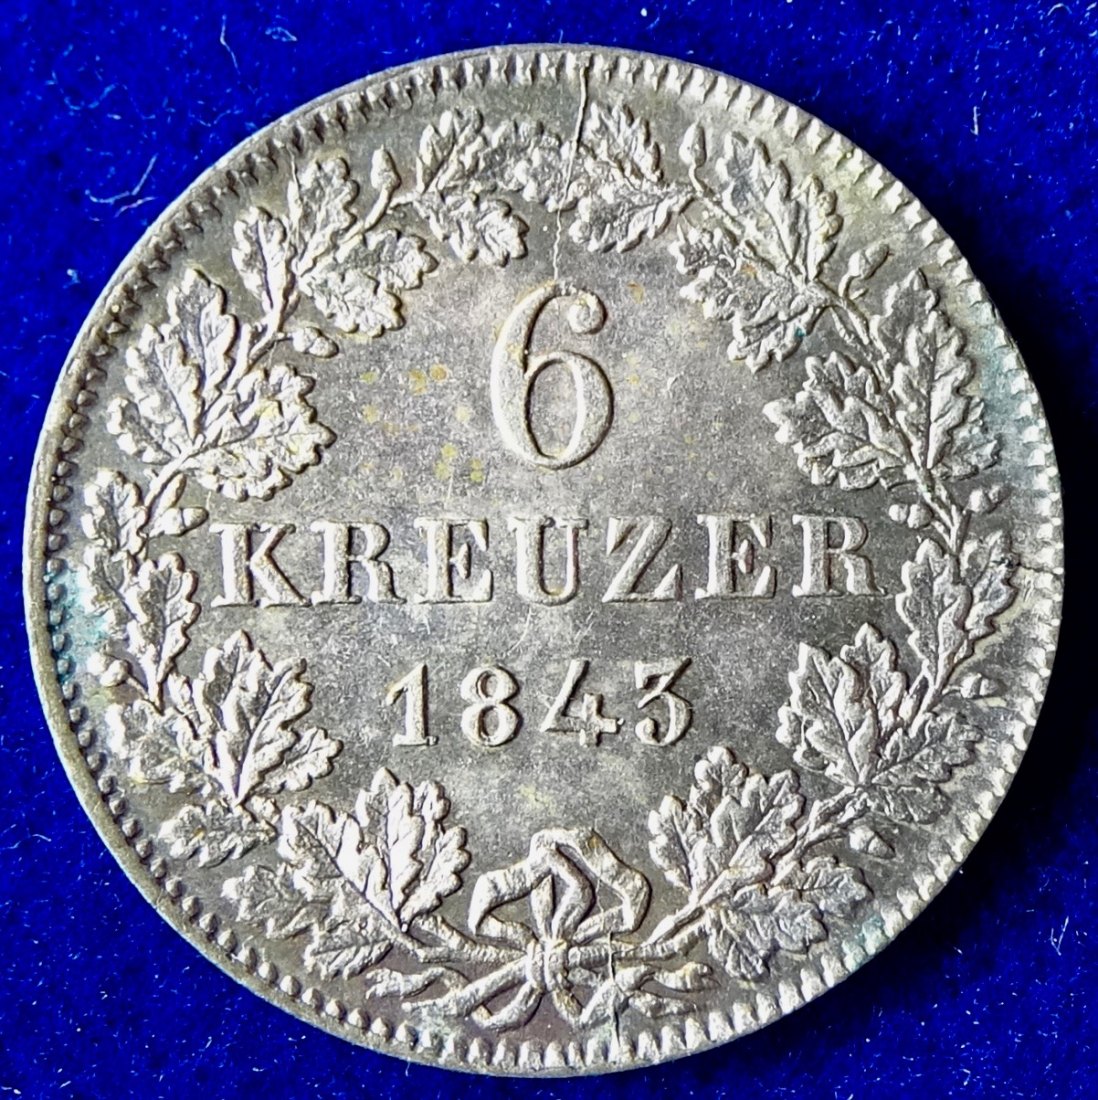  Frankfurt am Main, 6 Kreuzer 1843 Billon Münze mit Stempelsprung Fehler (Mint Error)   